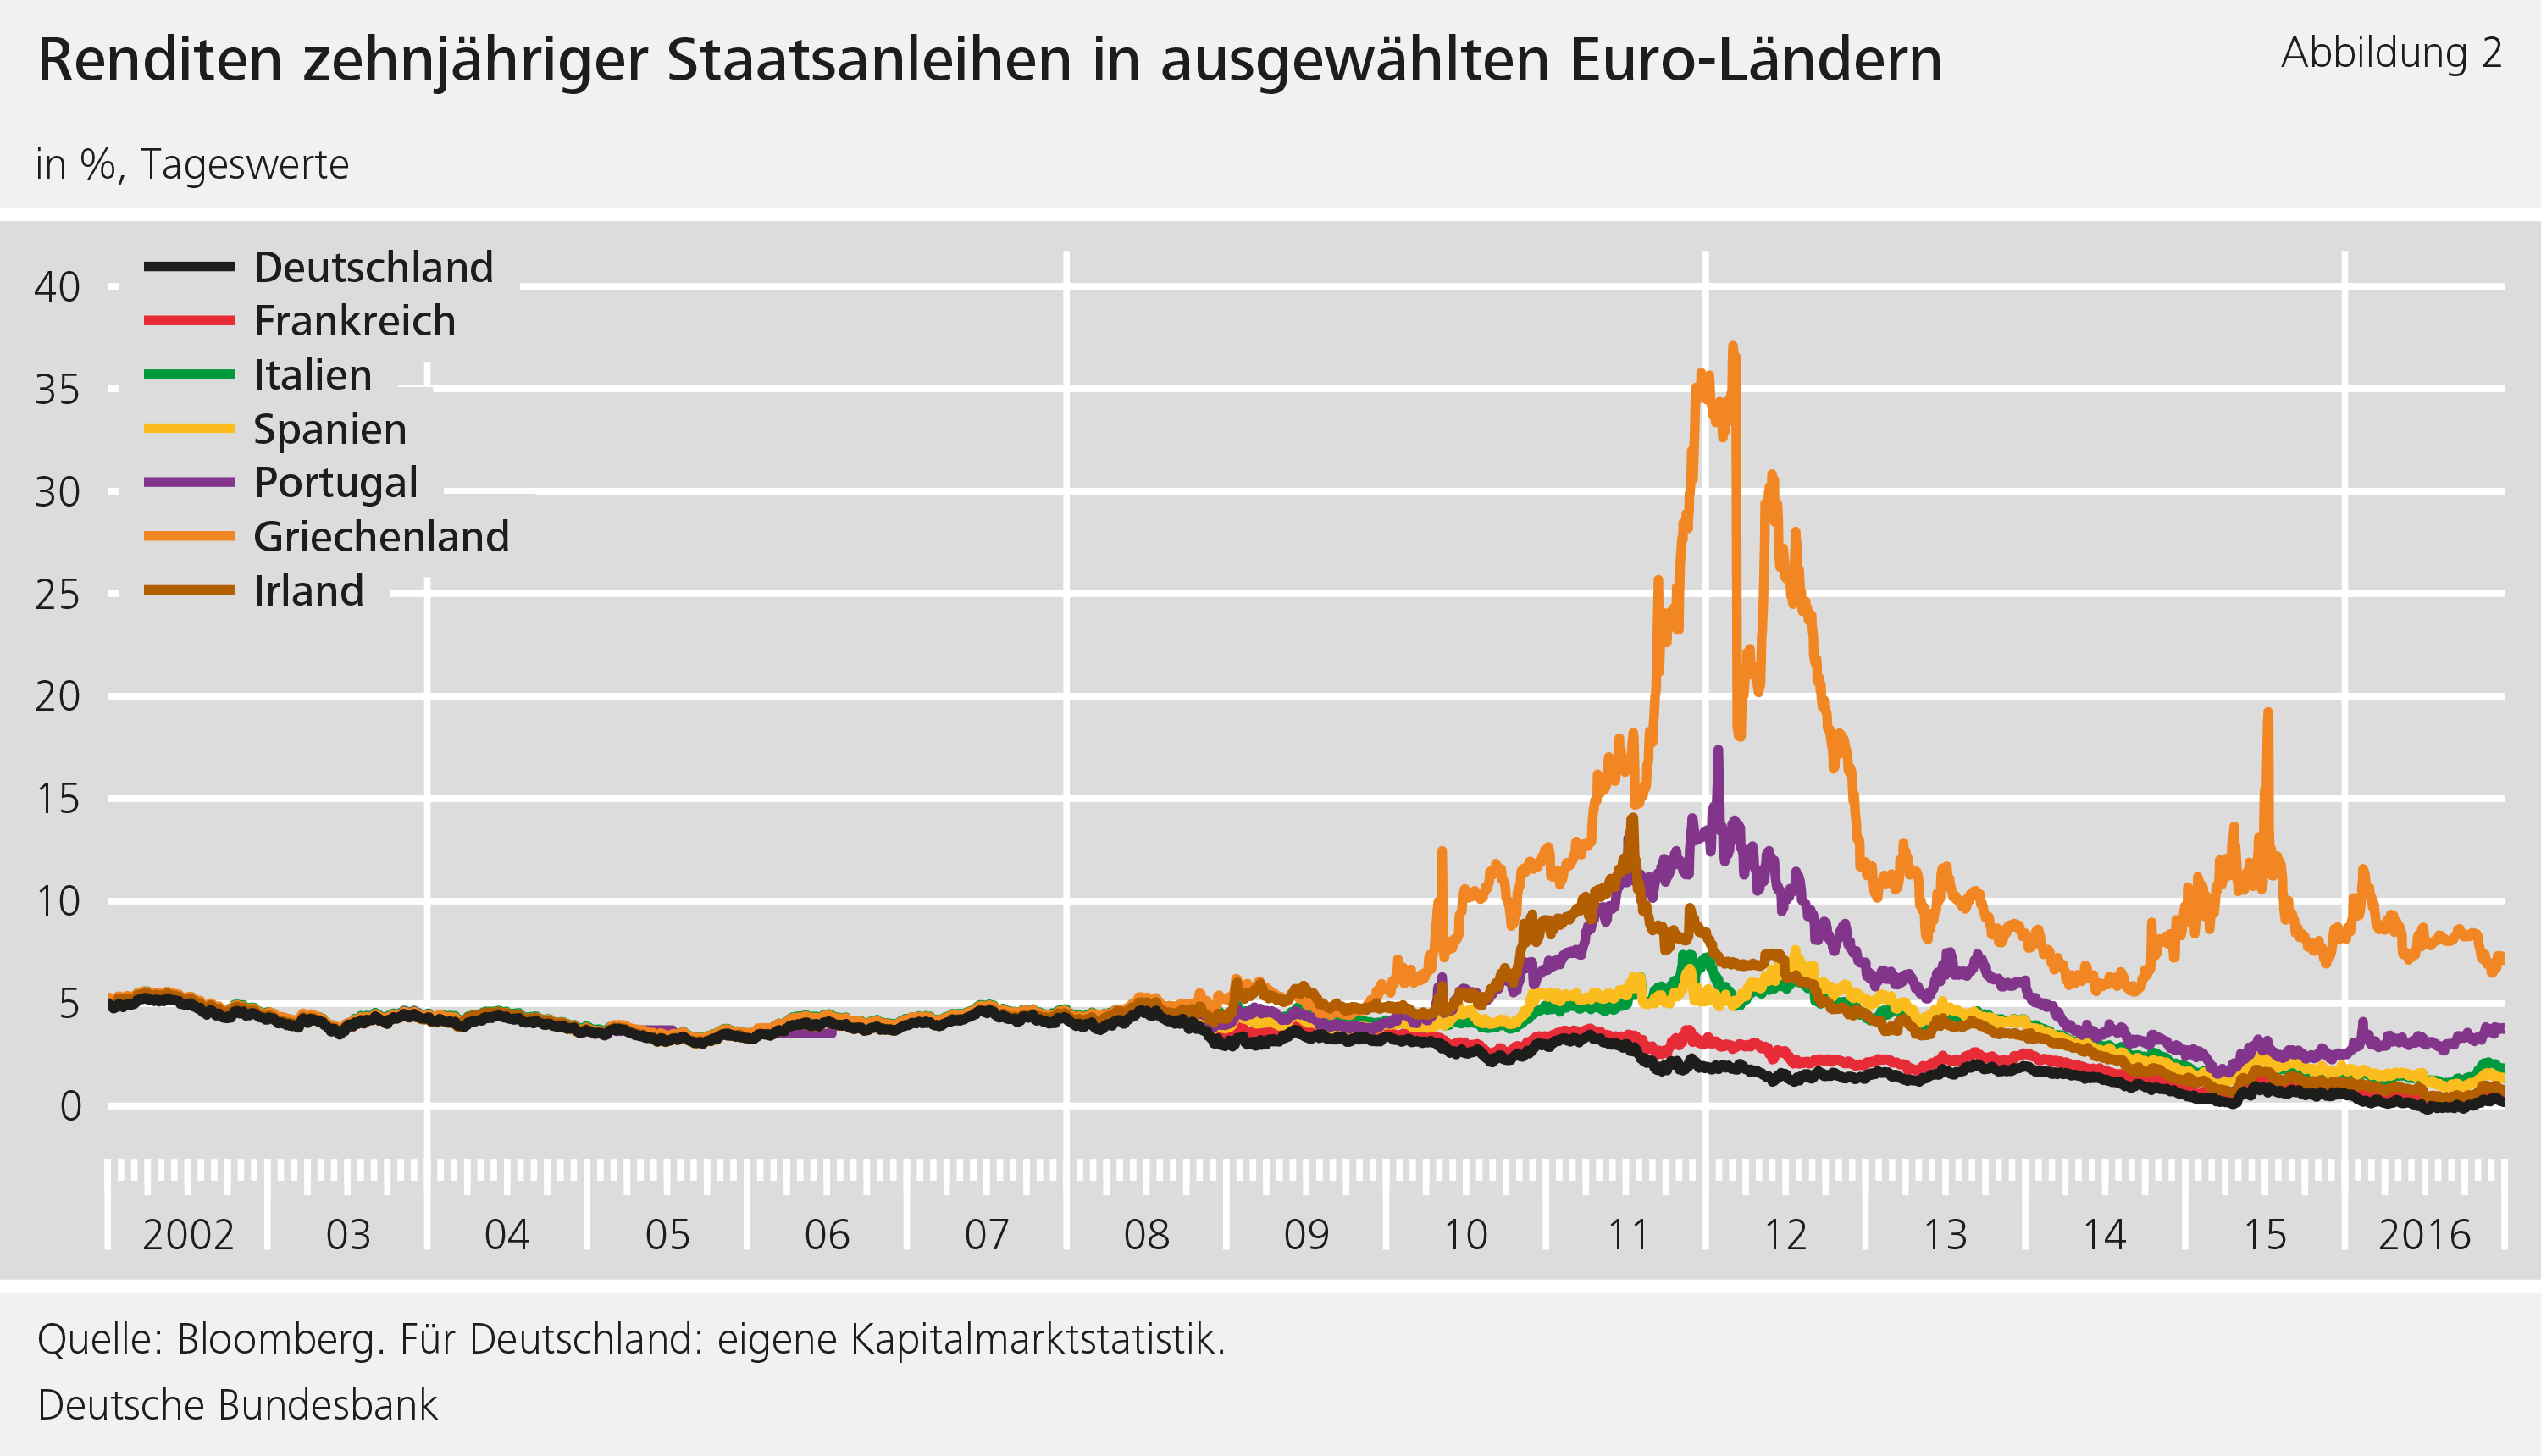 Abbildung 2: Renditen zehnjähriger Staatsanleihen in ausgewählten Euro-Ländern